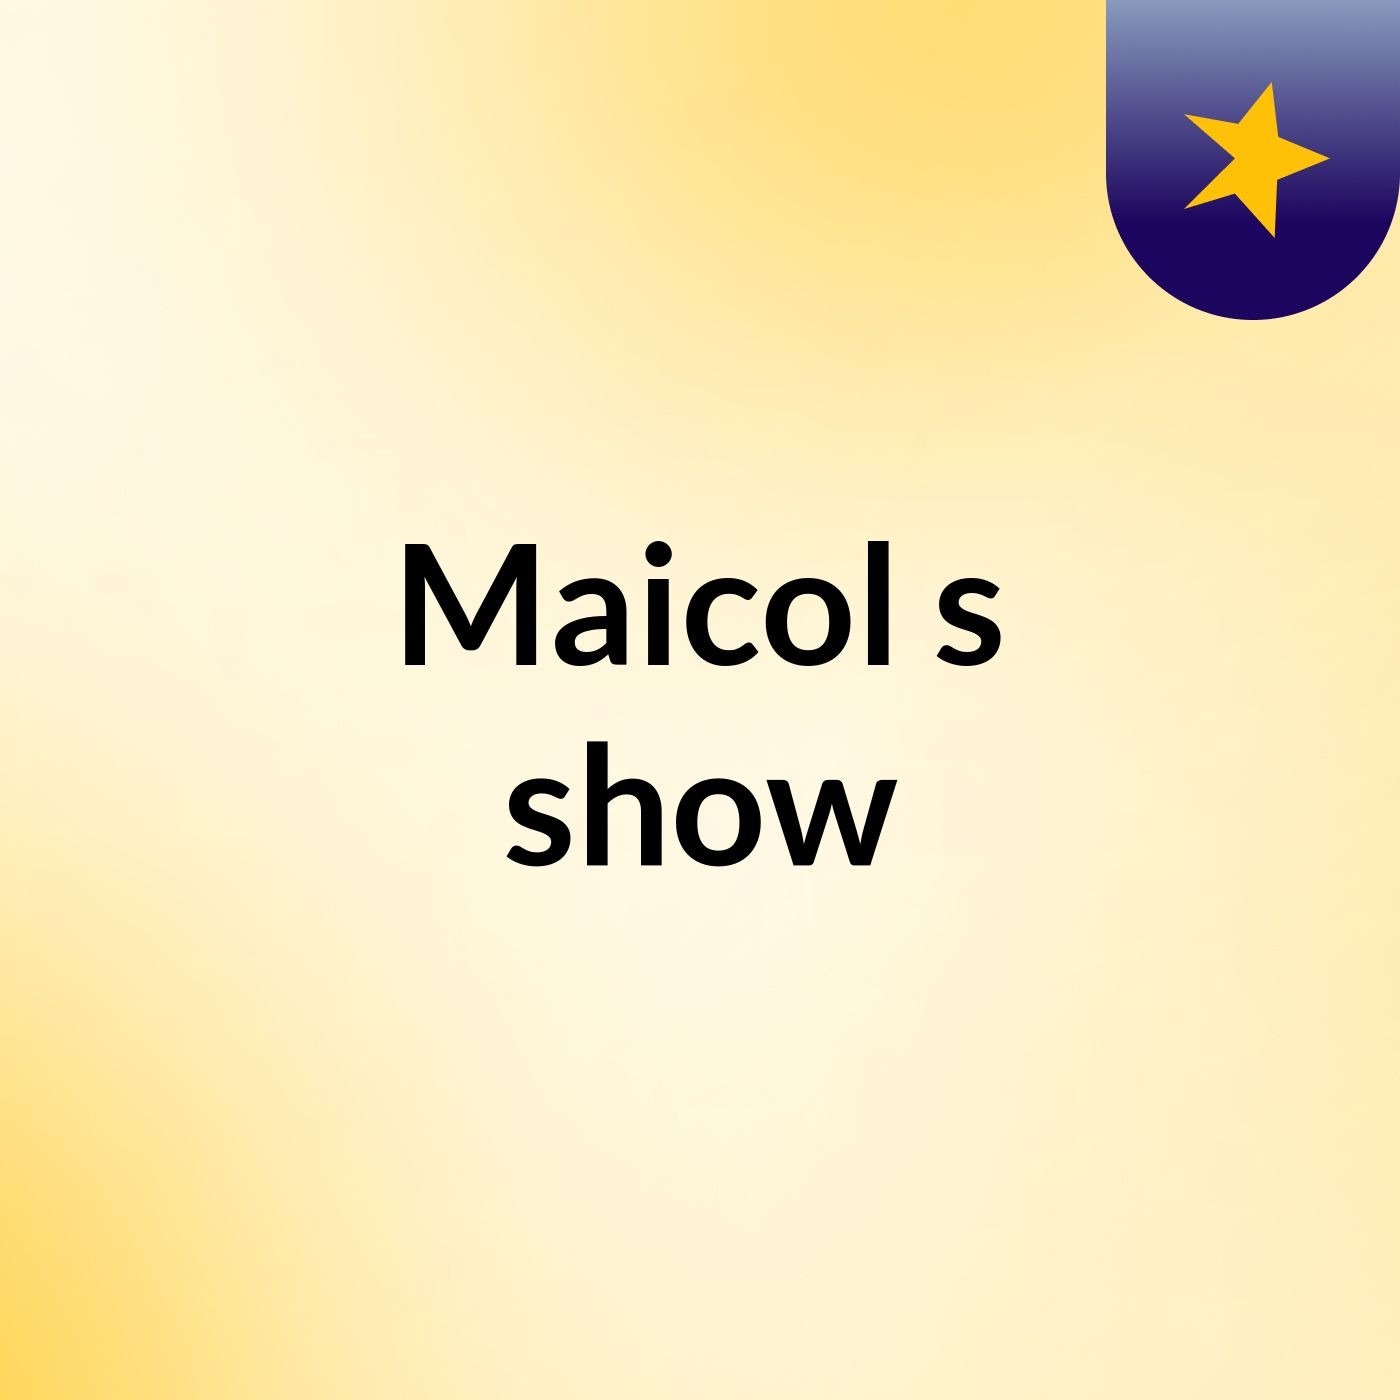 Maicol's show